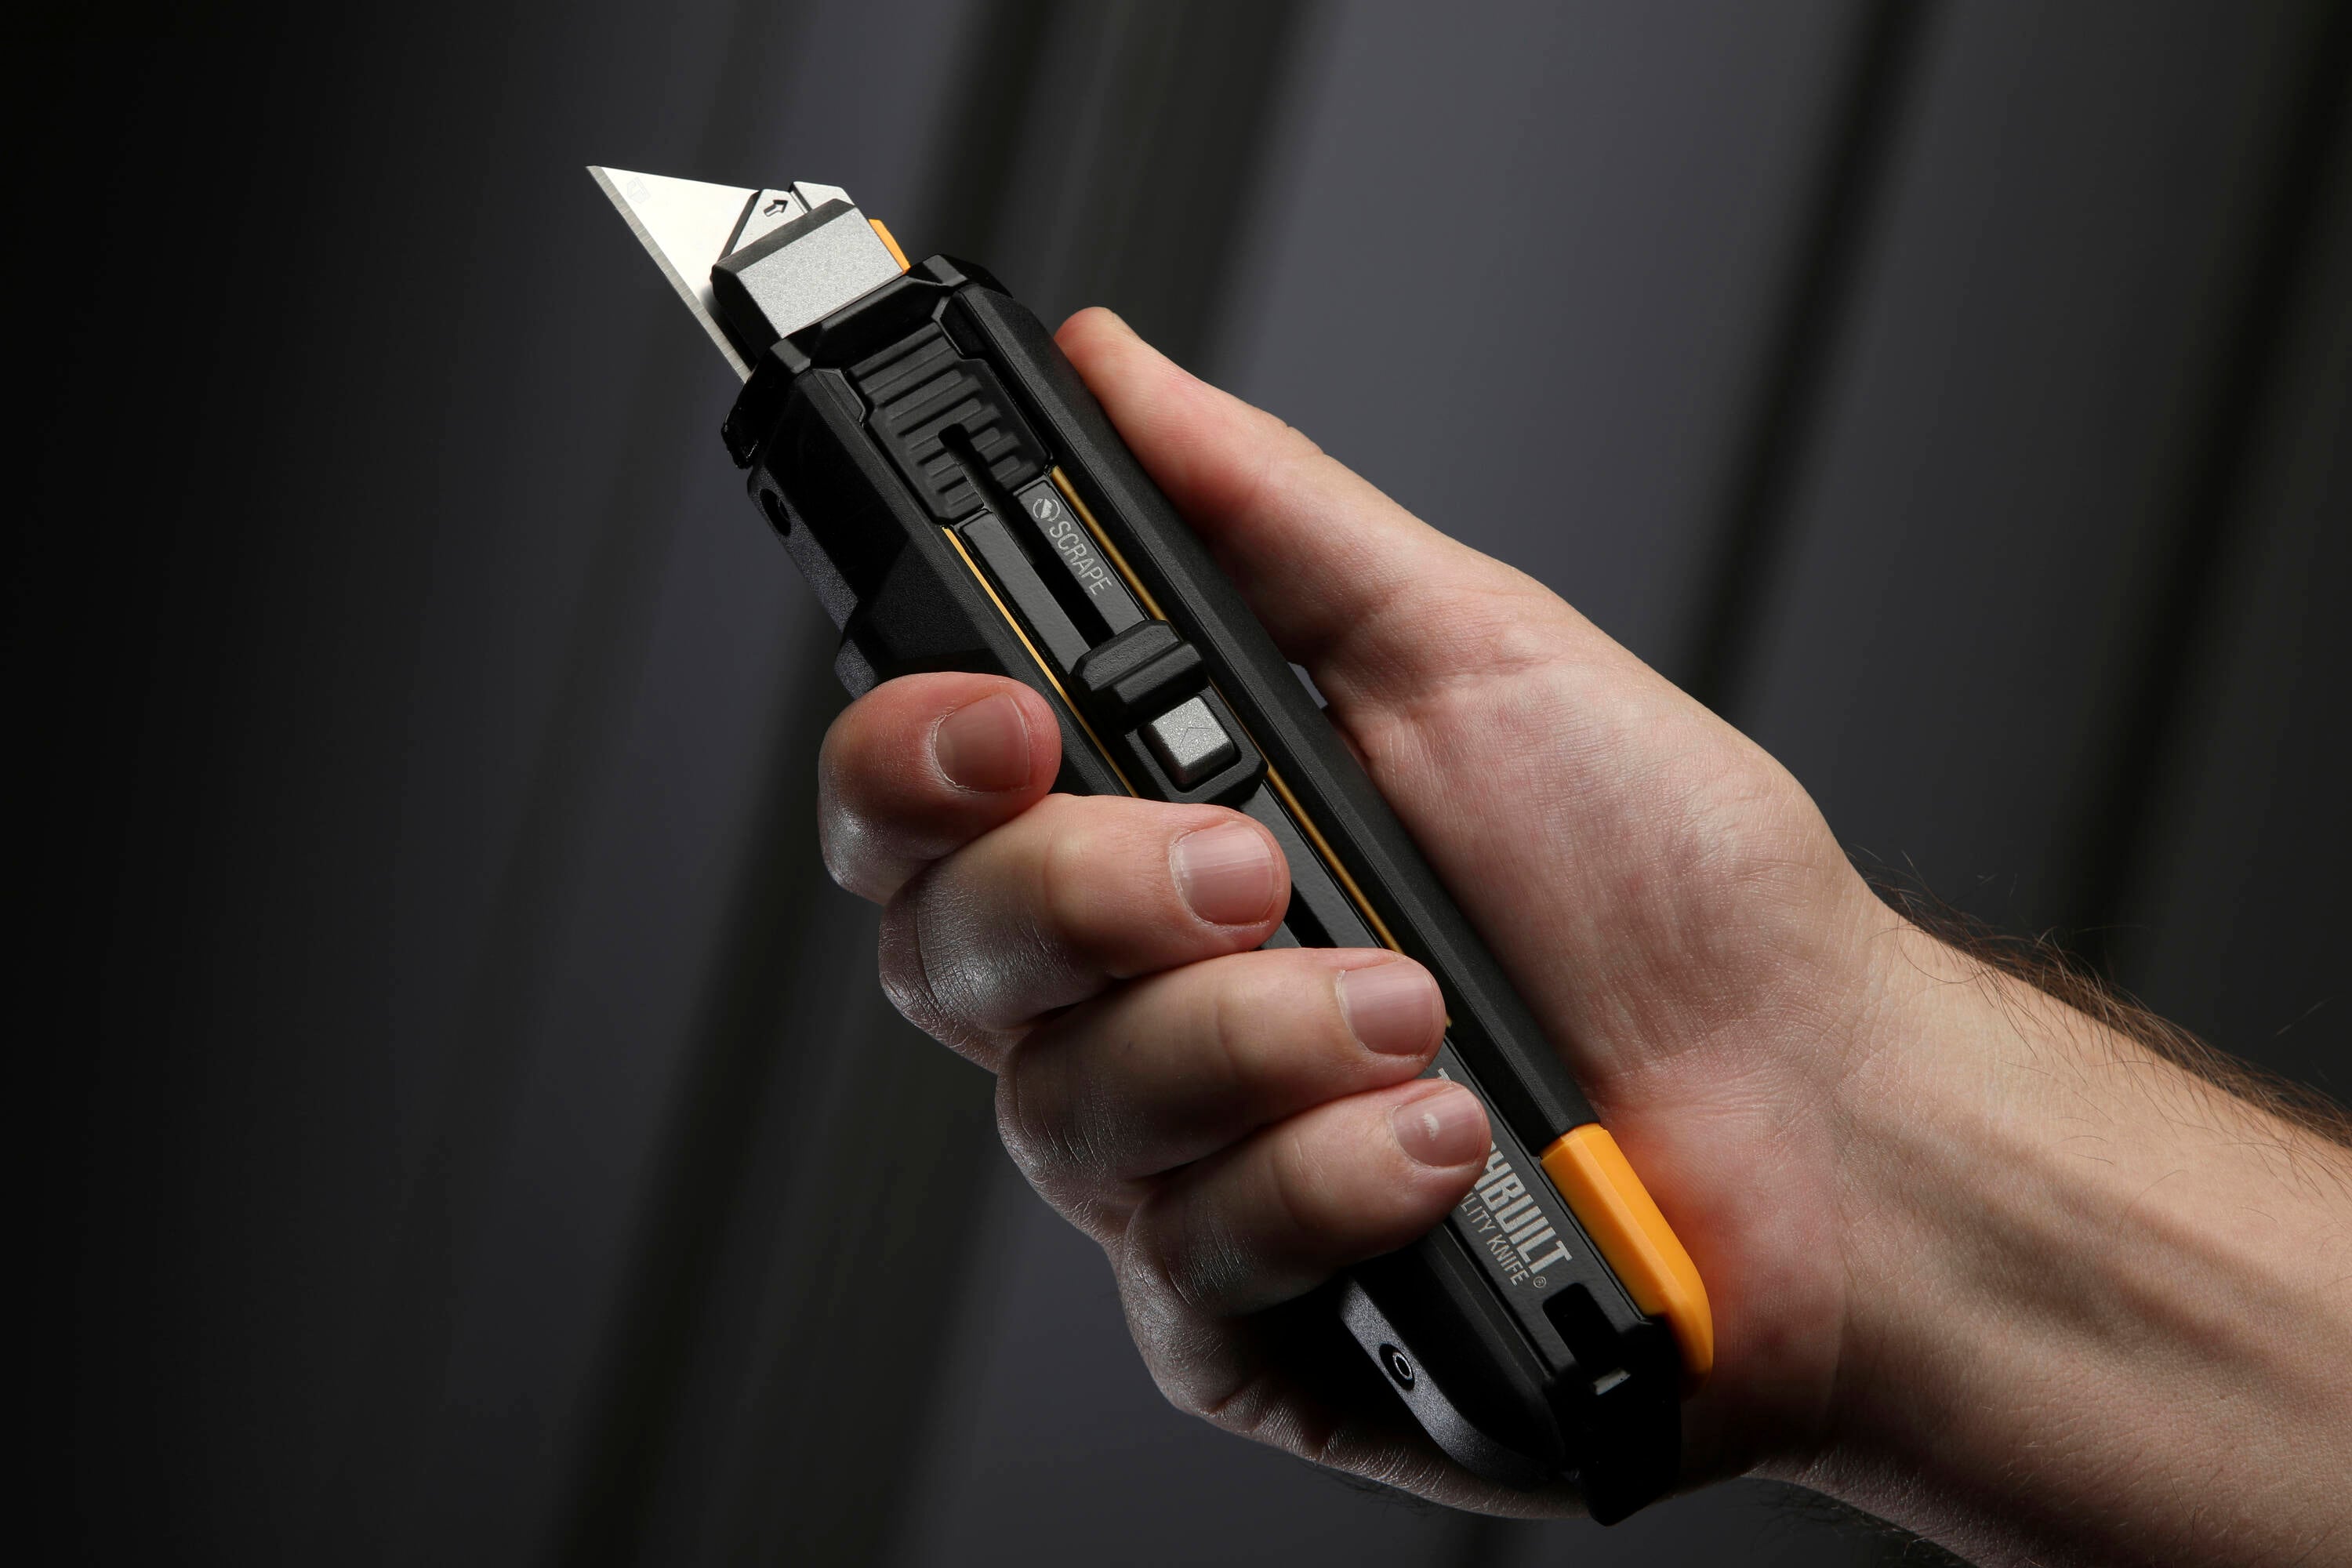 Toughbuilt - Utility Knife: 6″ Handle Length, Retractable